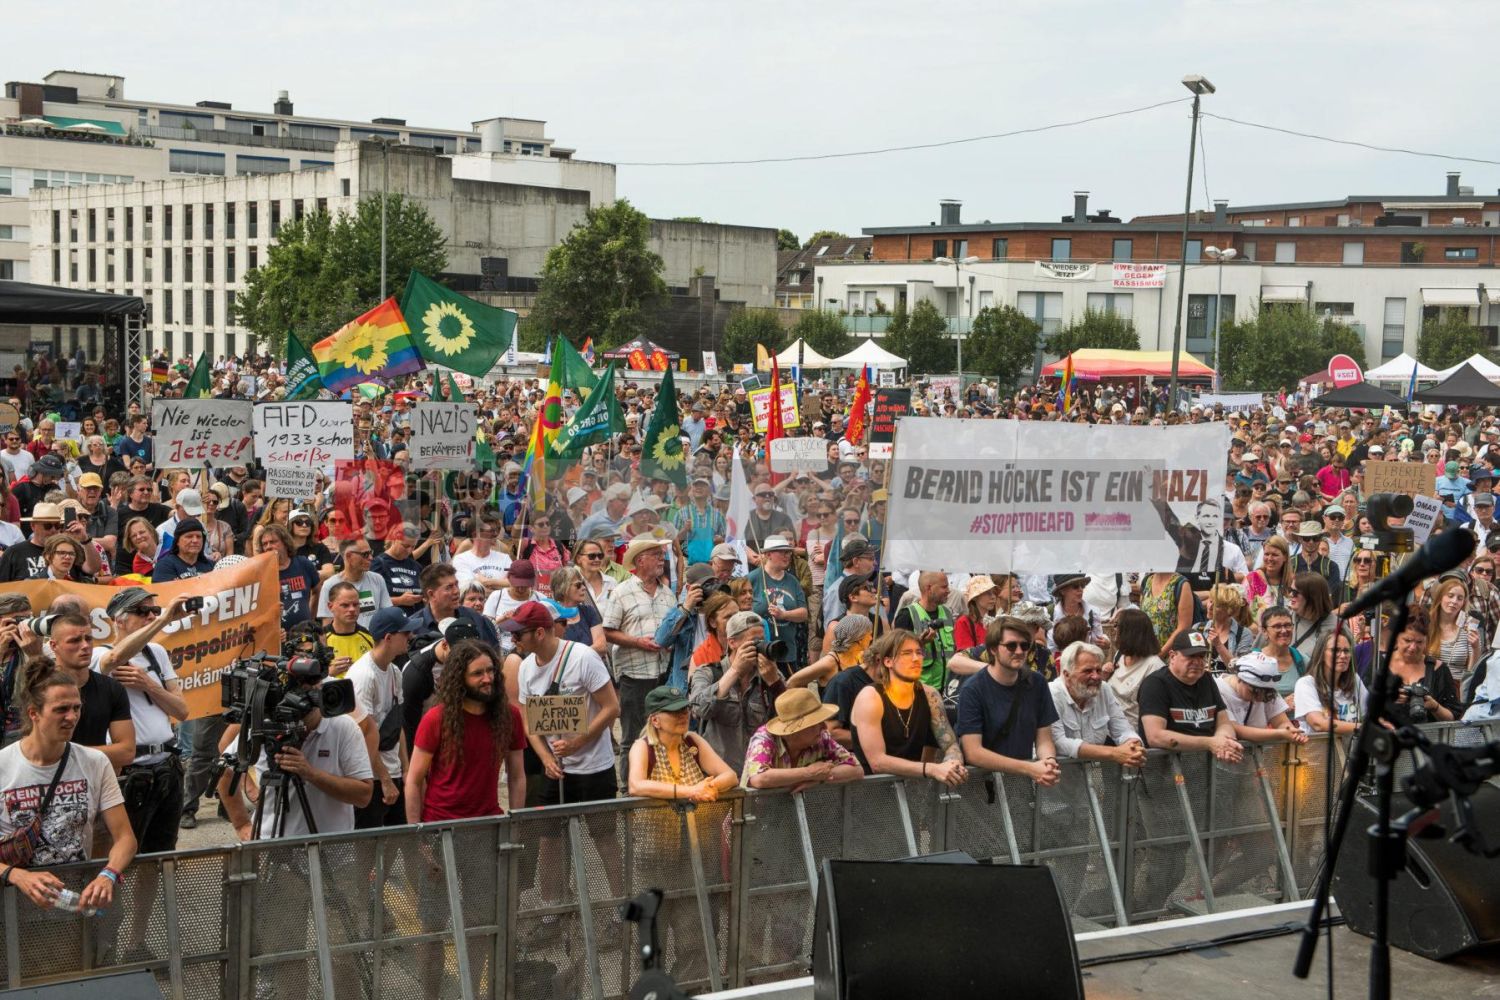 Laut - Bunt - Entschlossen! Protest gegen den Bundesparteitag der AfD in Essen <i>Bild Christian Schneider/R-mediabase</i> <br><a href=/confor2/?bld=83094&pst=82663&aid=615&dc=1325&i1=Christian%20Schneider/R-mediabase><strong>Downloadanfrage</strong></a>  